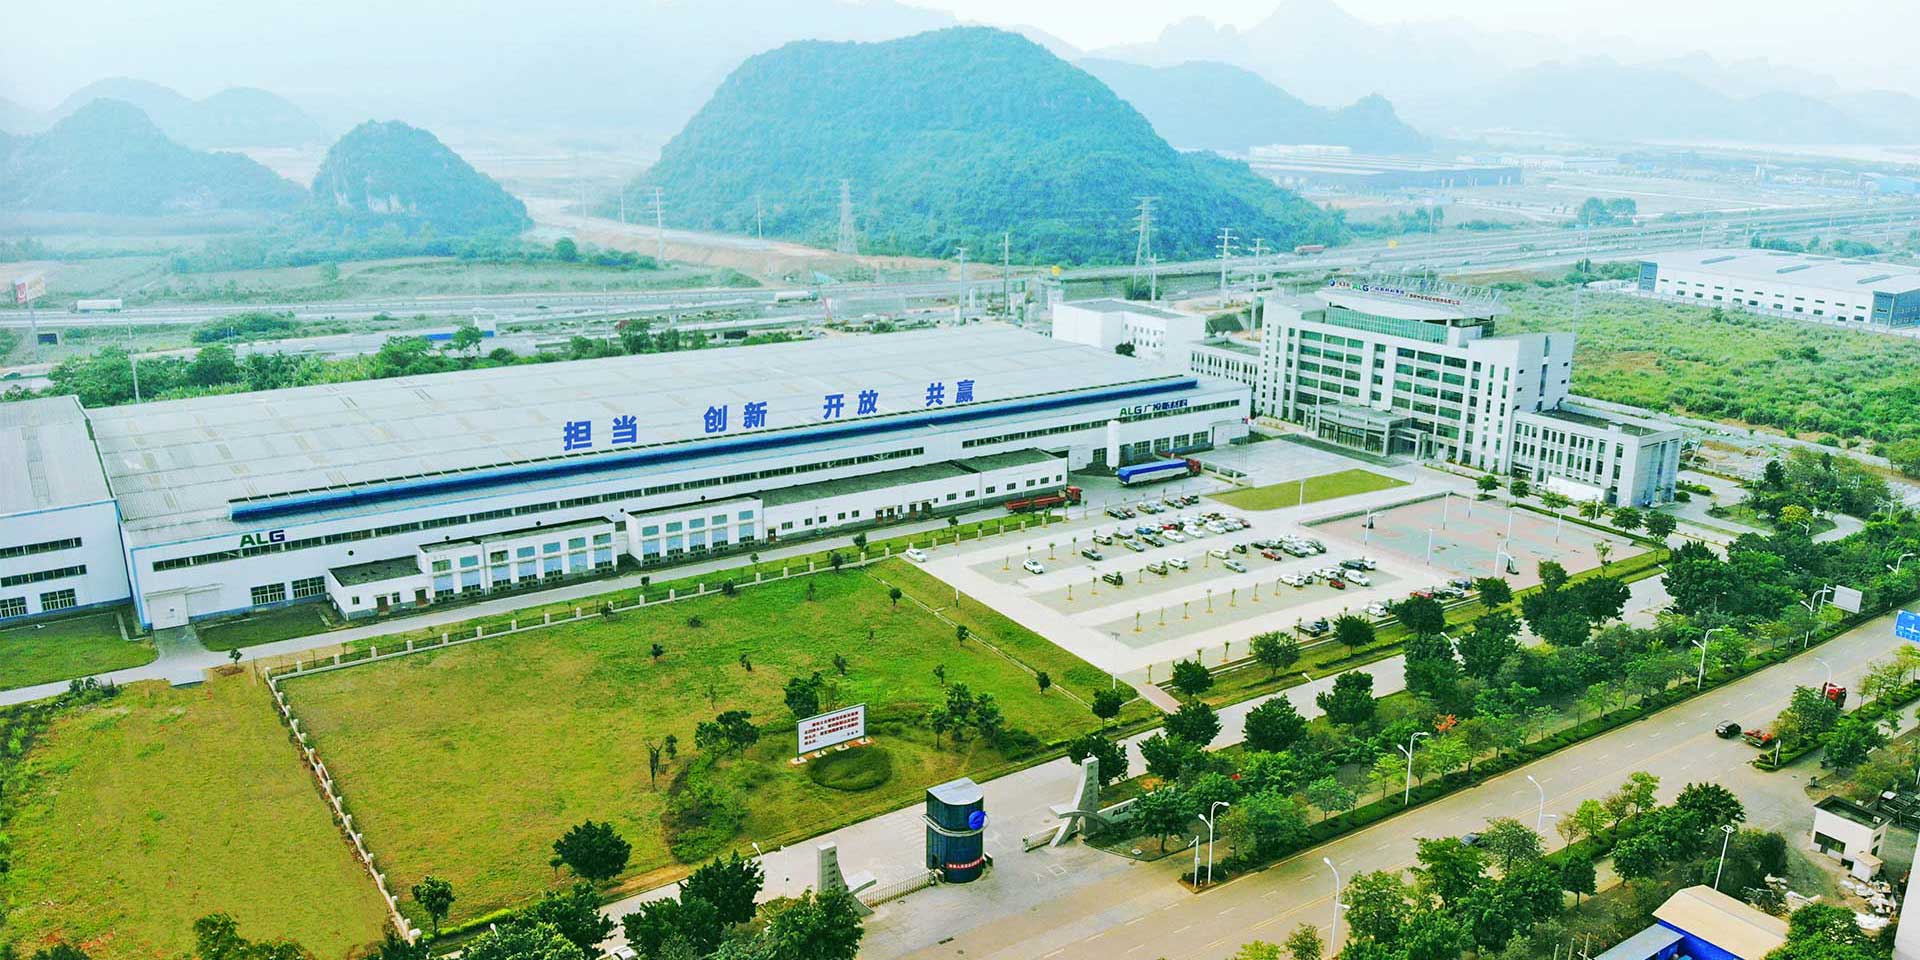 Guangxi Liuzhou Yinhai Aluminum Co., Ltd